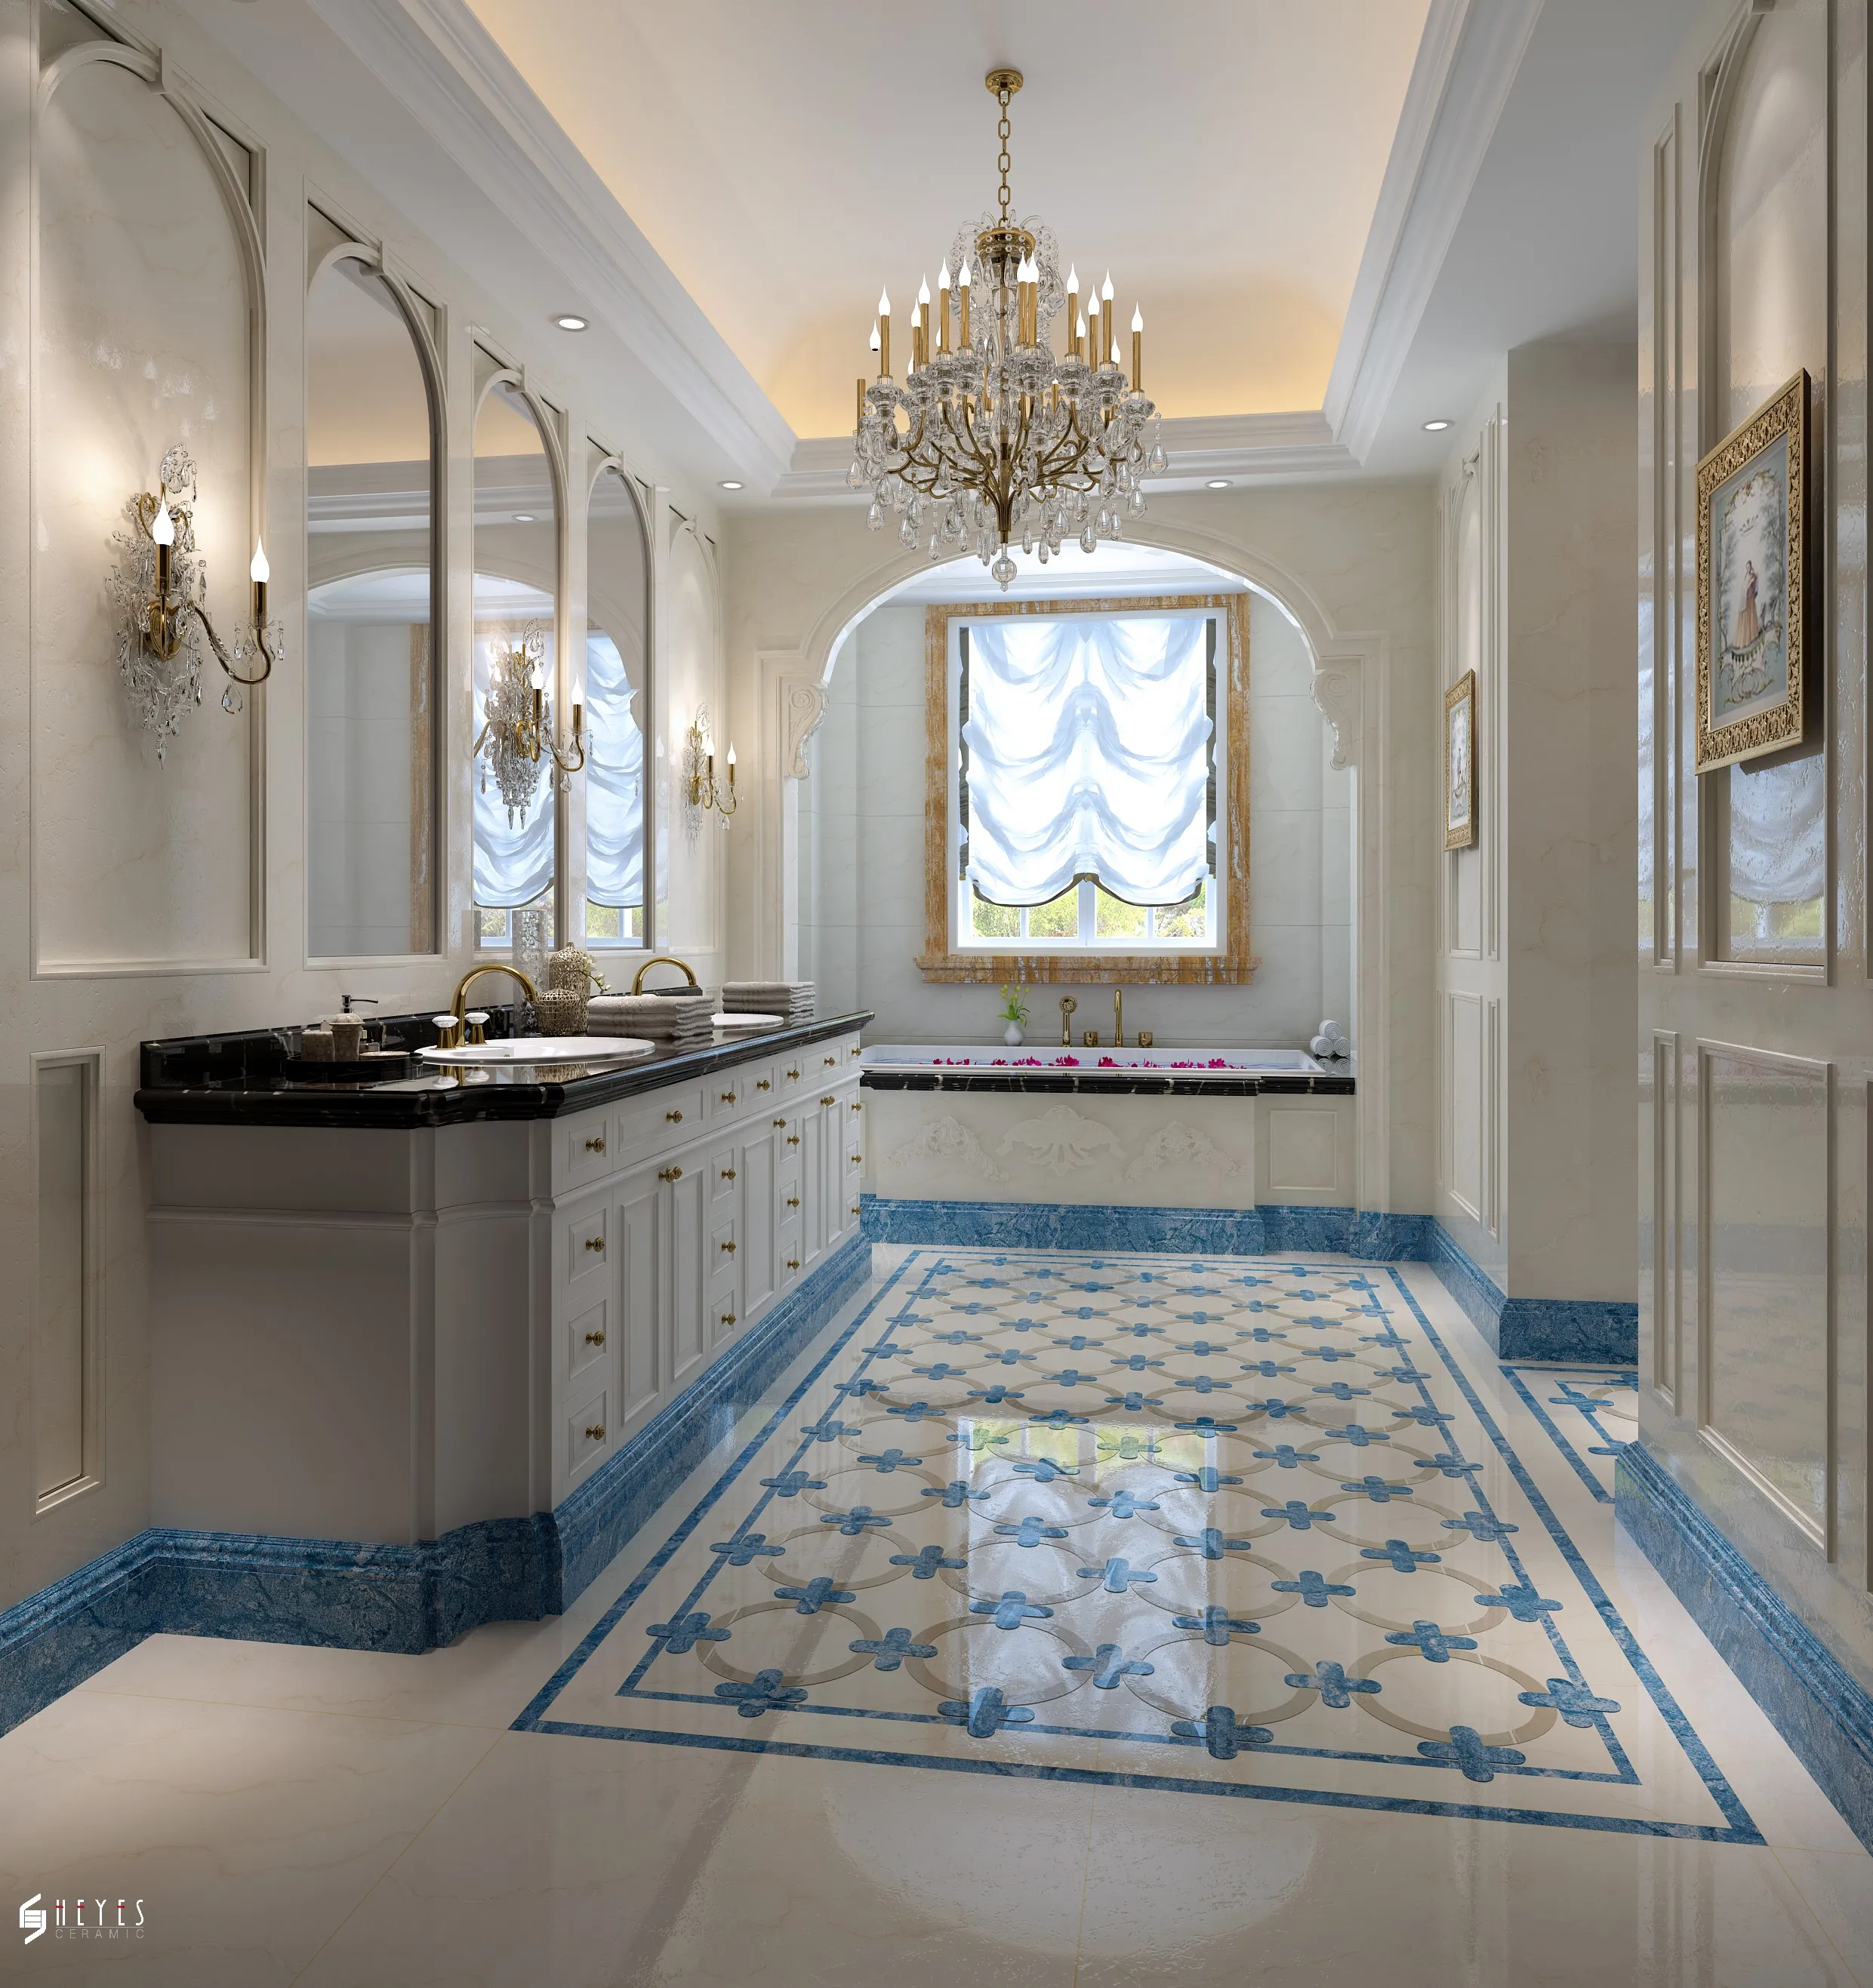 Kitchen Backsplash Tile Polished Porcelain Bathroom Floor Tiles